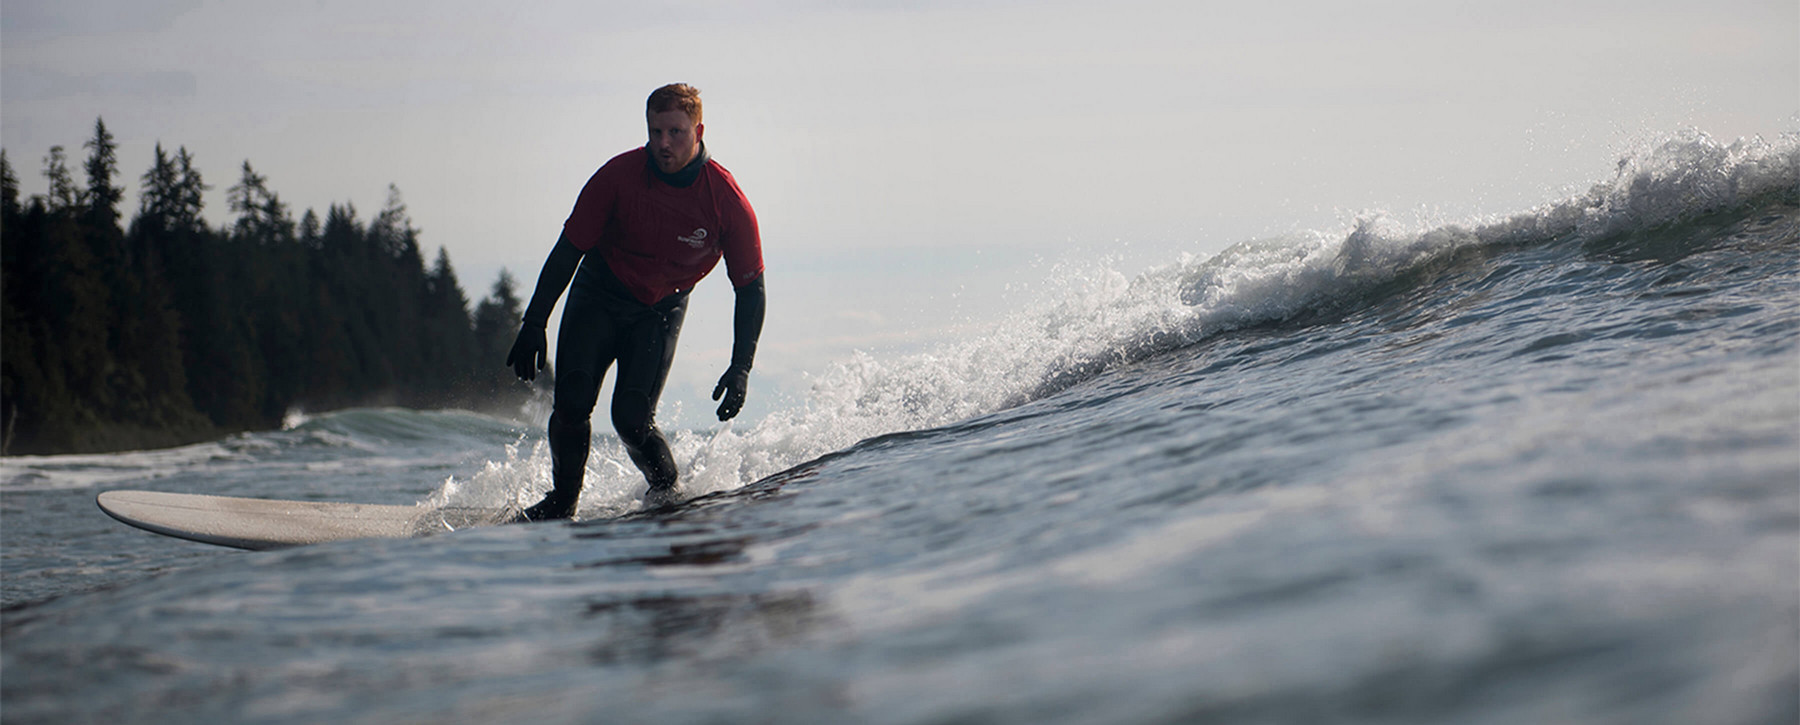 Man in wetsuit surfing.